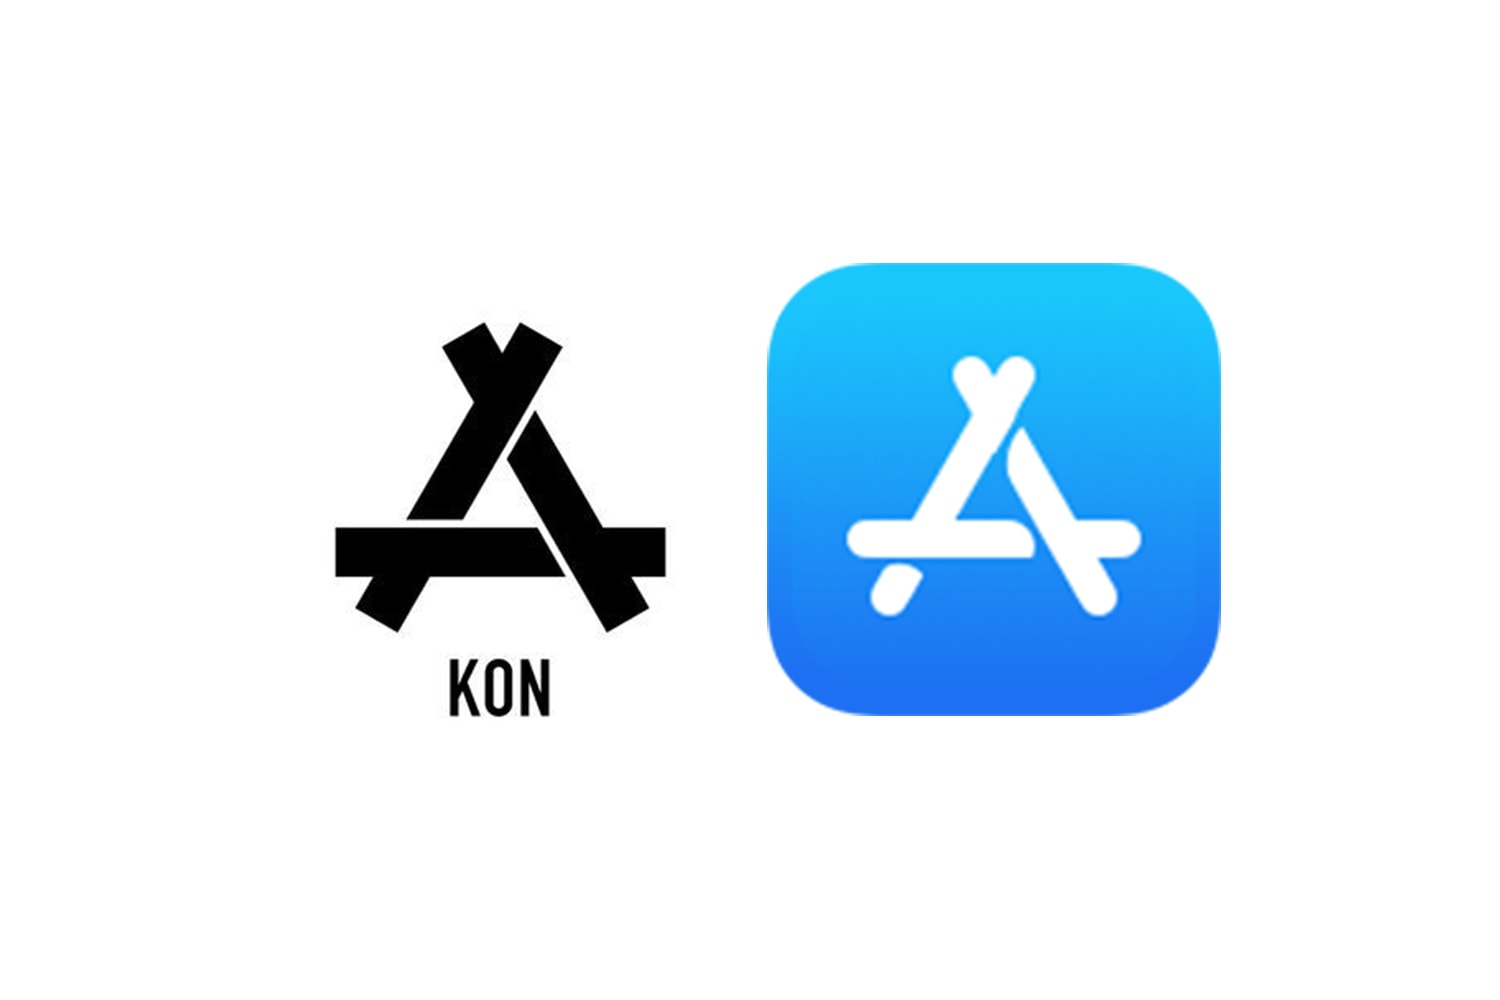 中國服裝品牌 KON 控指 App Store 圖標抄襲